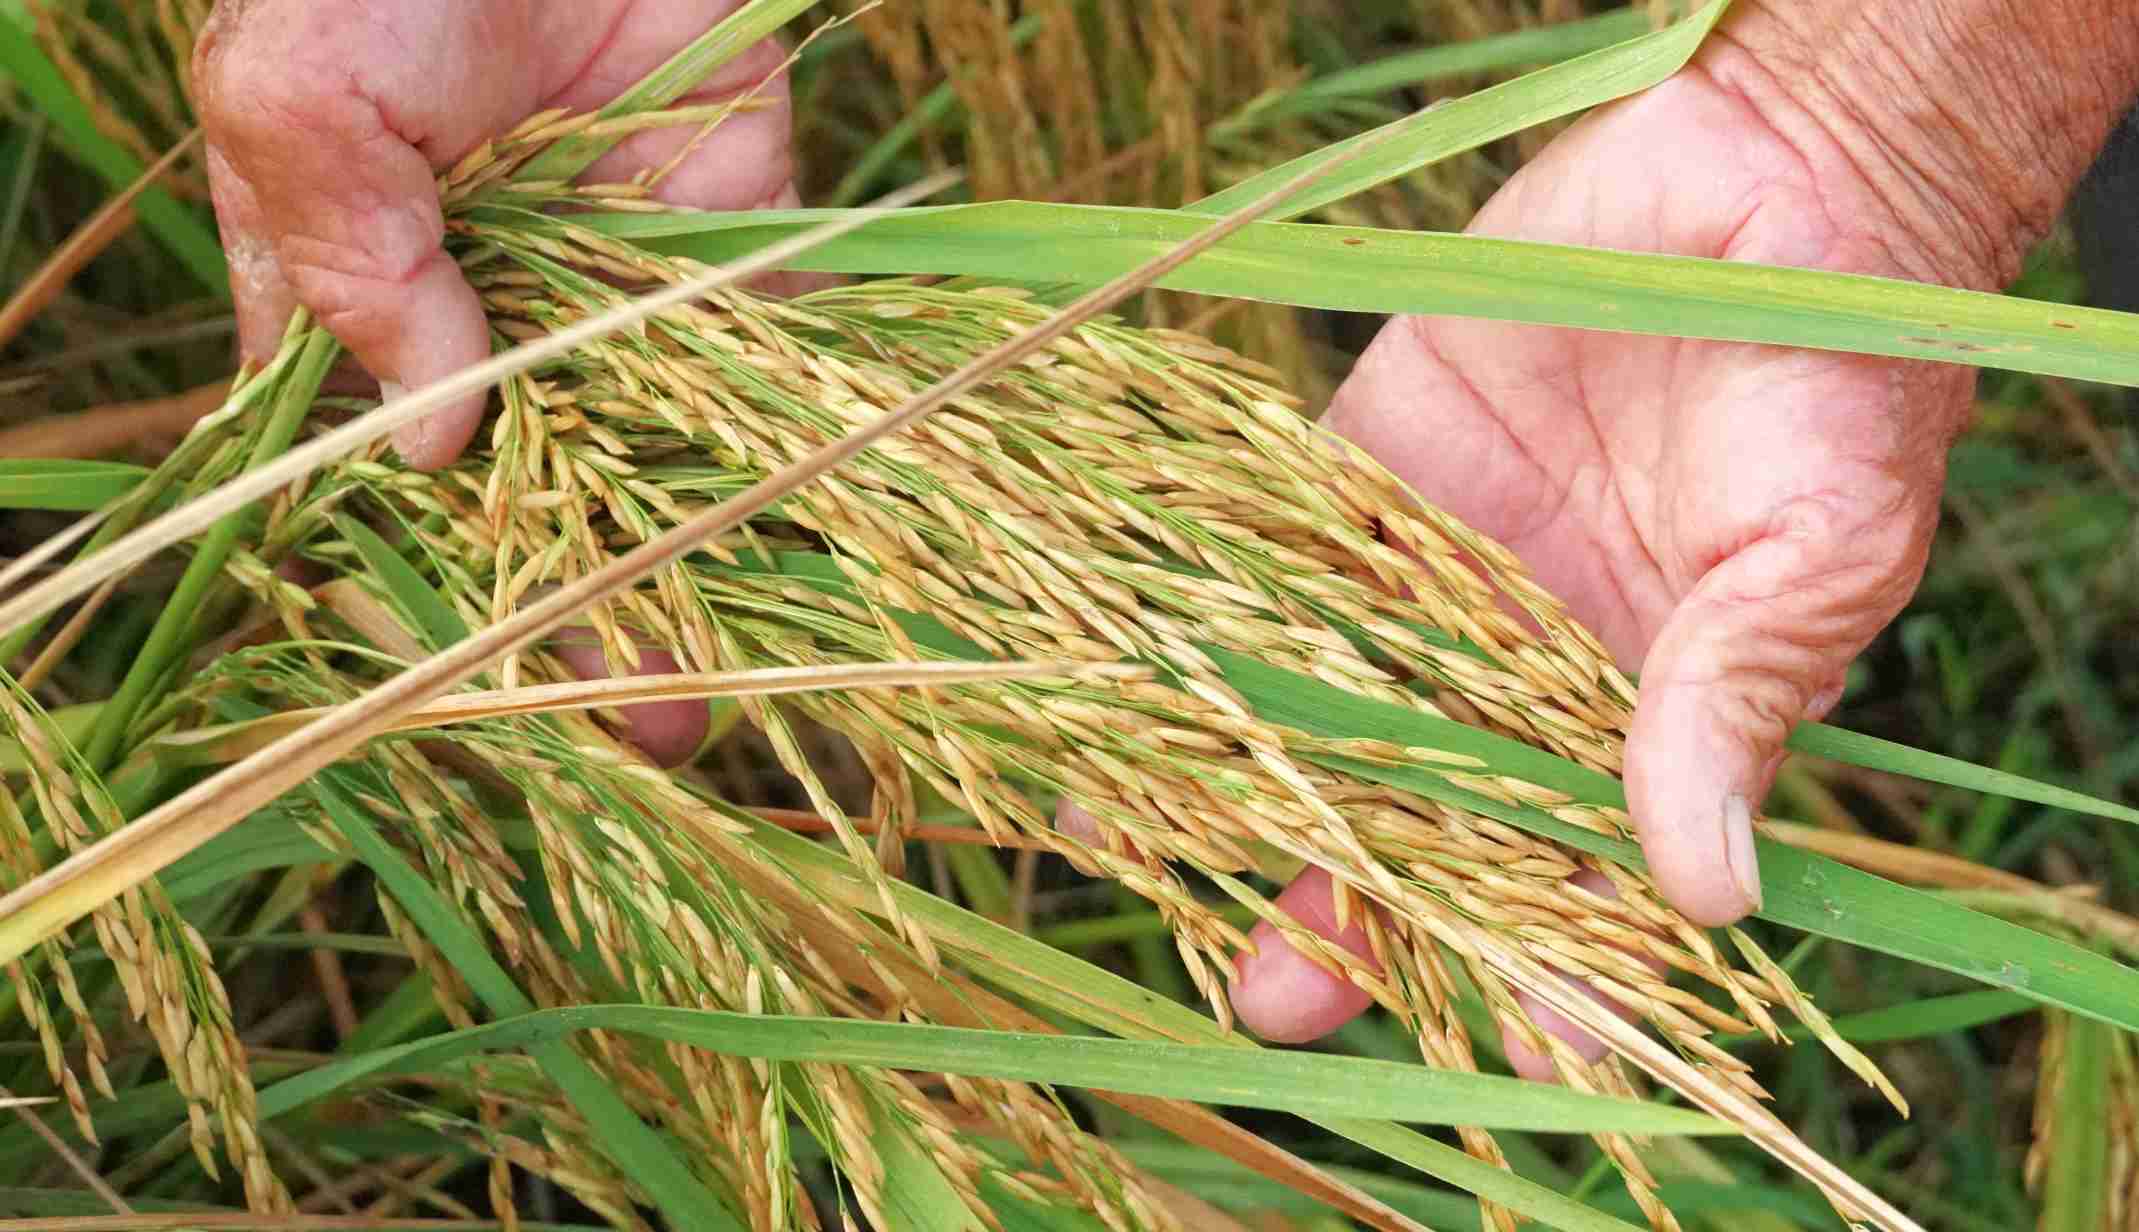 Tại đây, lúa được gieo cấy 2 vụ/năm với quy trình canh tác nghiêm ngặt từ khâu làm đất, gieo cấy, chăm sóc đến thu hoạch.